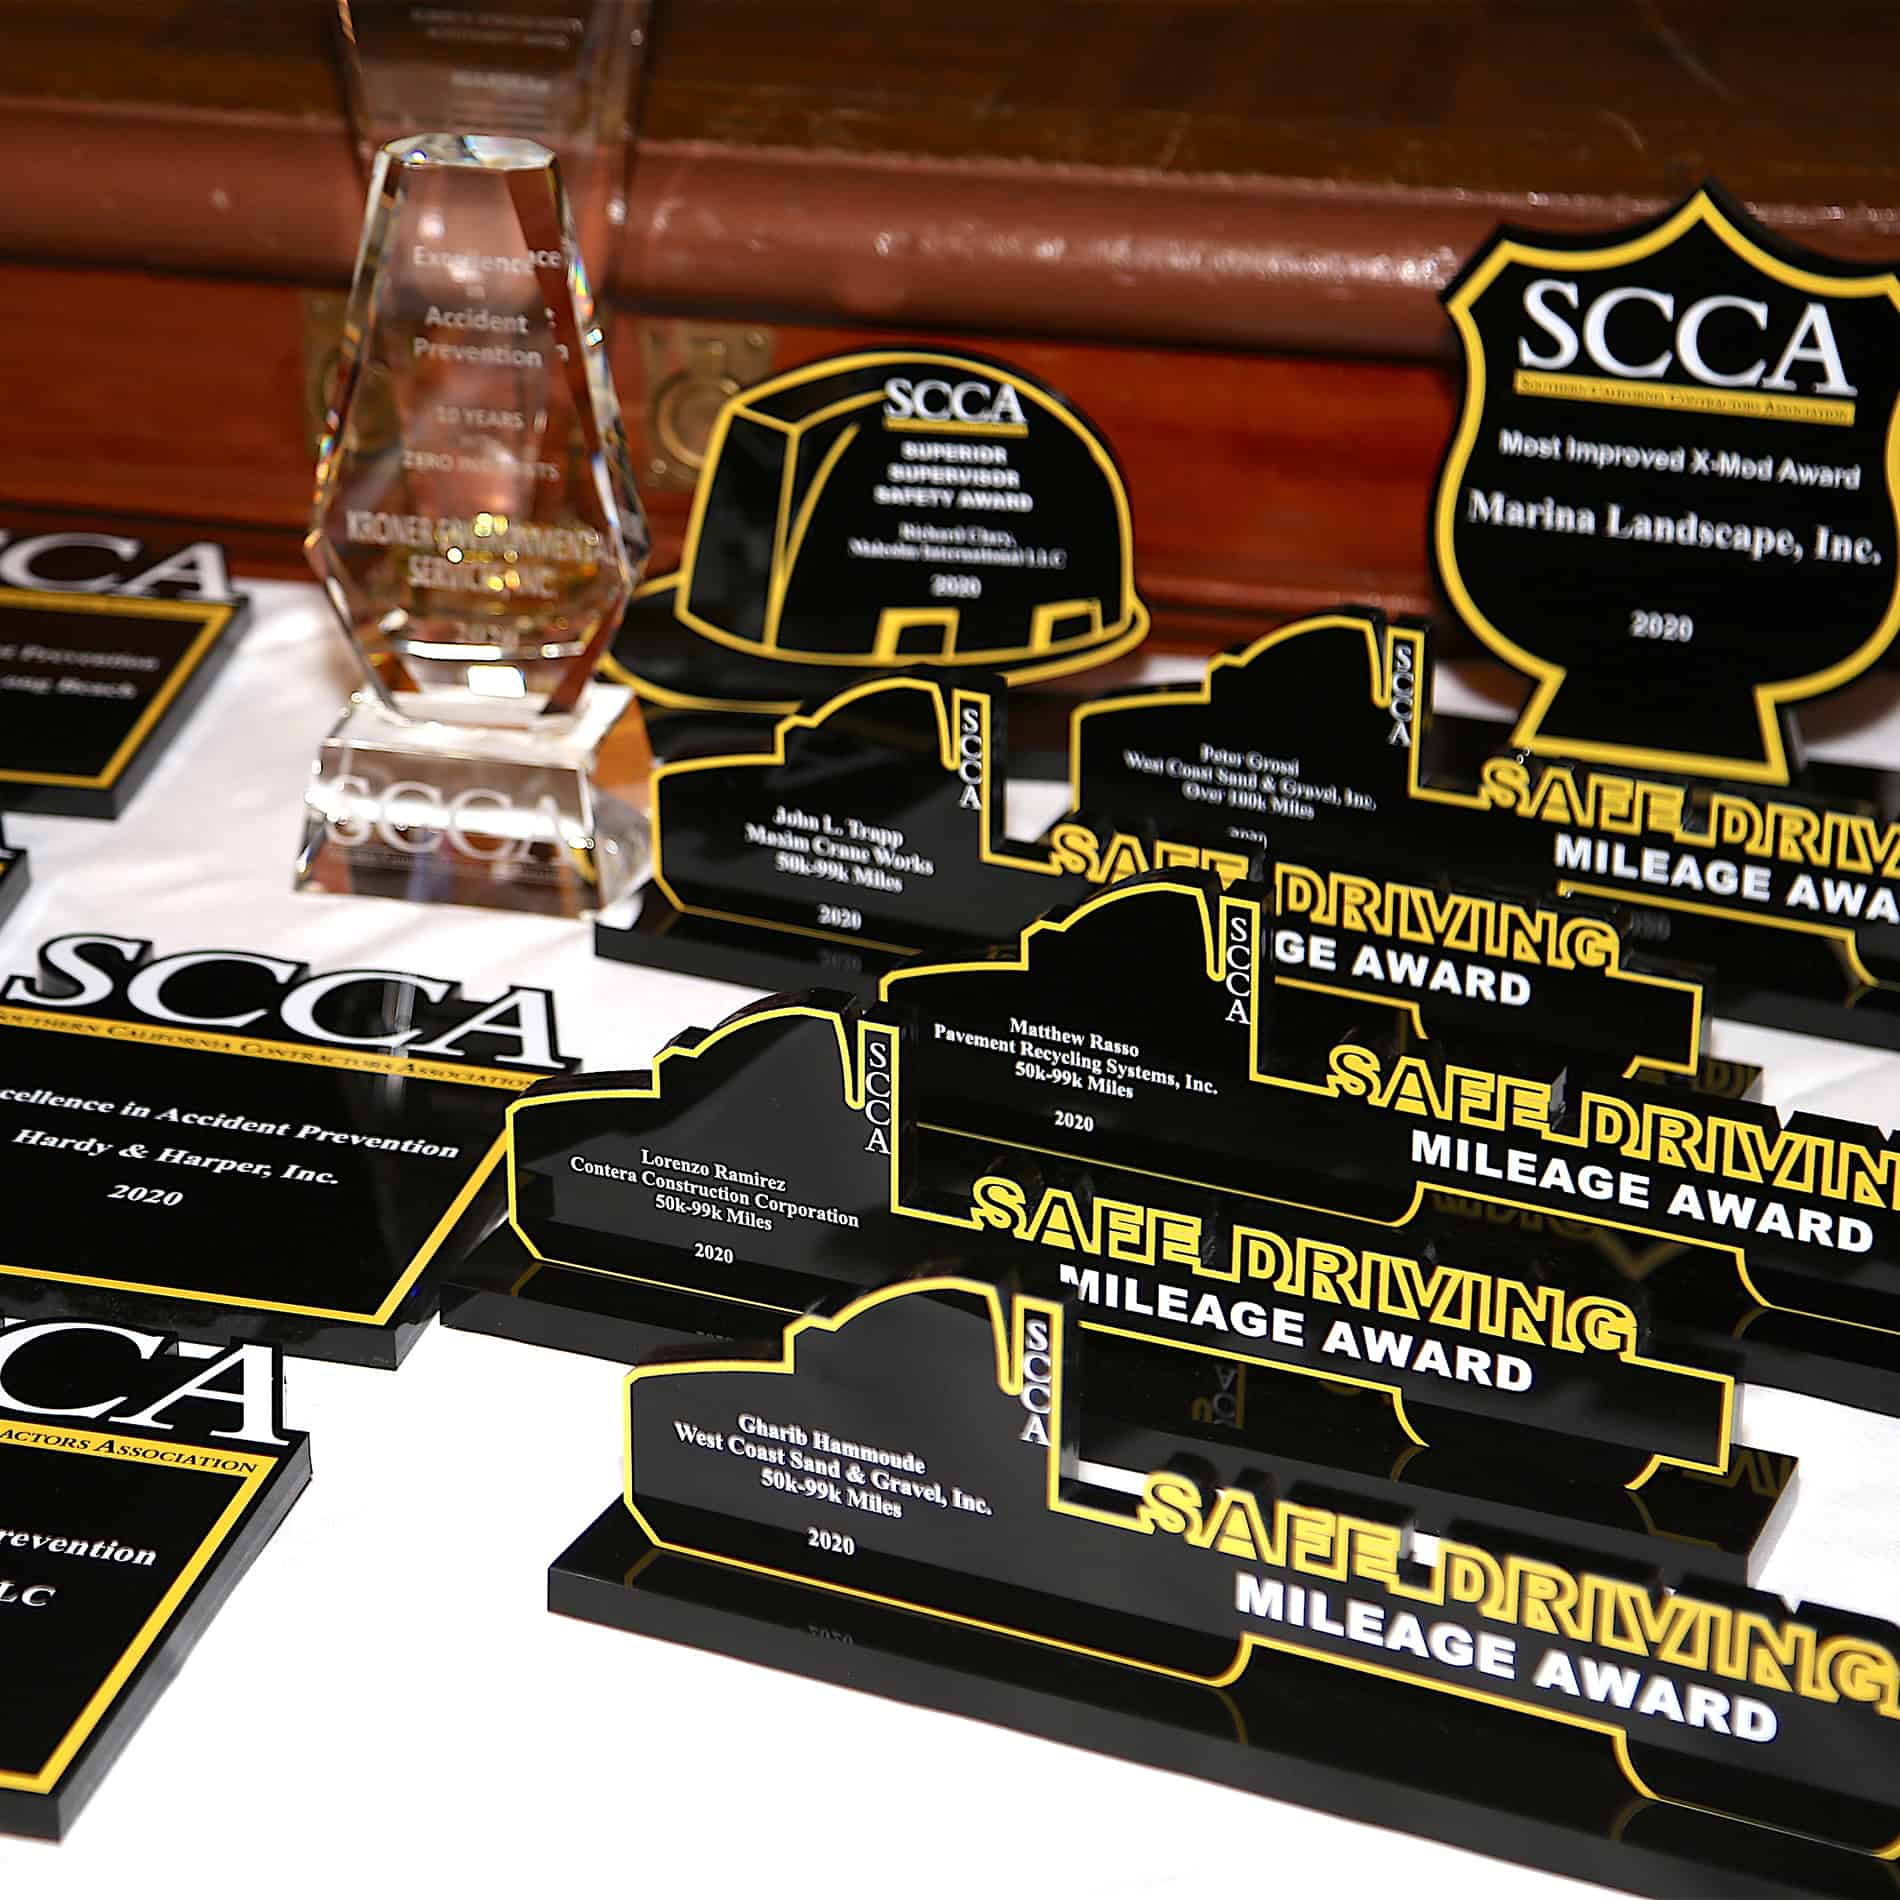 SCCA Awards